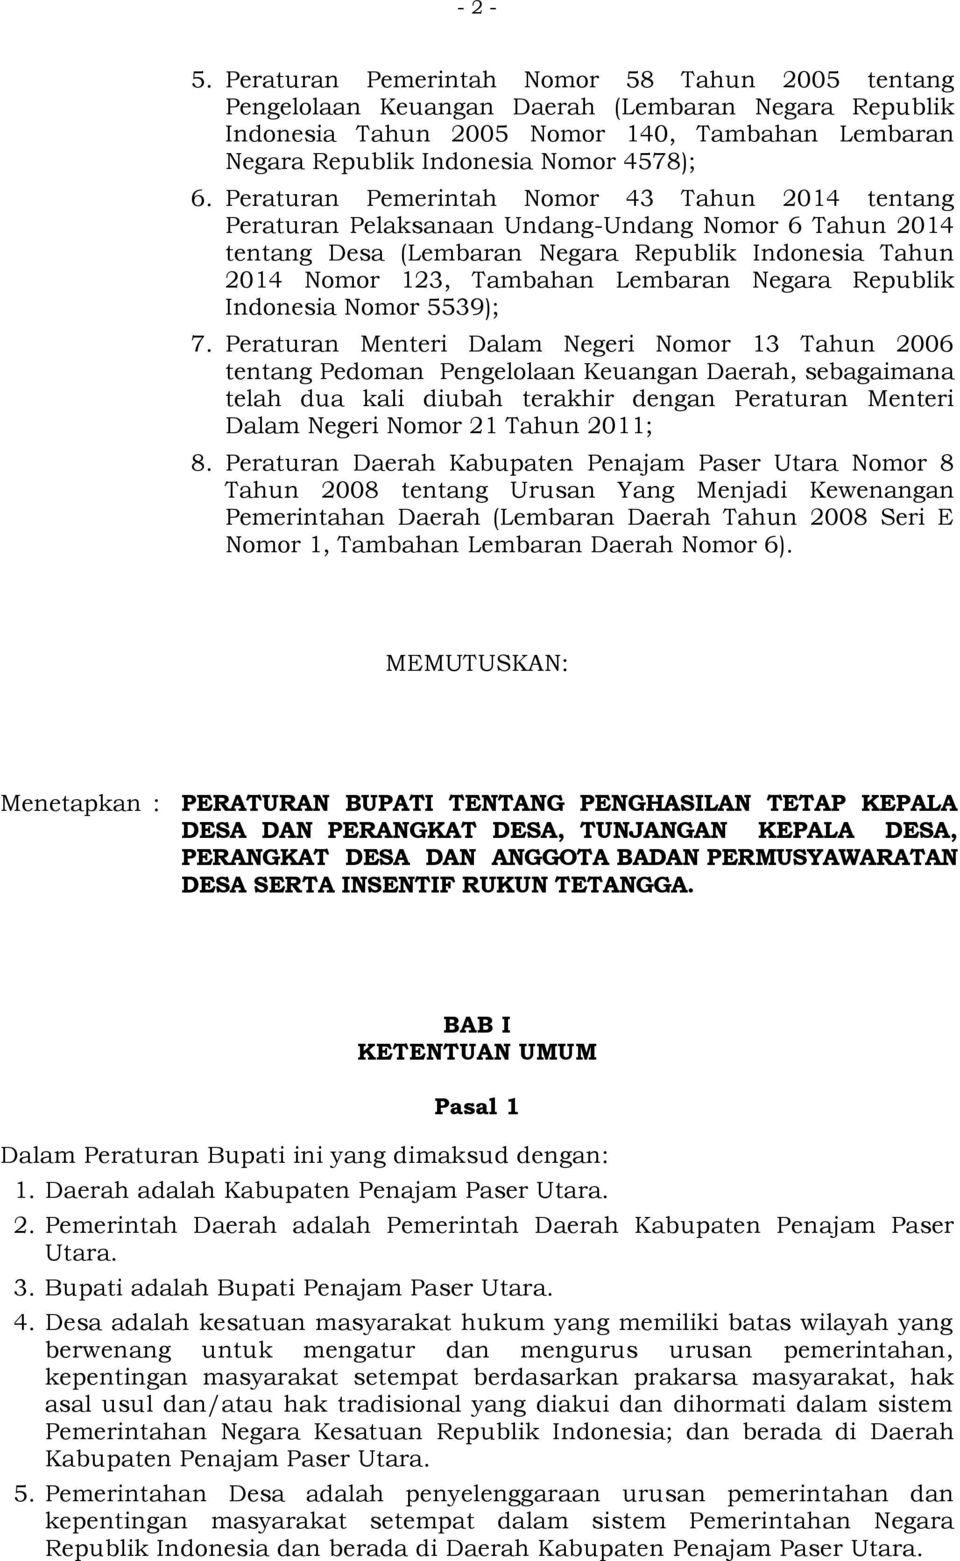 Peraturan Pemerintah Nomor 43 Tahun 2014 tentang Peraturan Pelaksanaan Undang-Undang Nomor 6 Tahun 2014 tentang Desa (Lembaran Negara Republik Indonesia Tahun 2014 Nomor 123, Tambahan Lembaran Negara